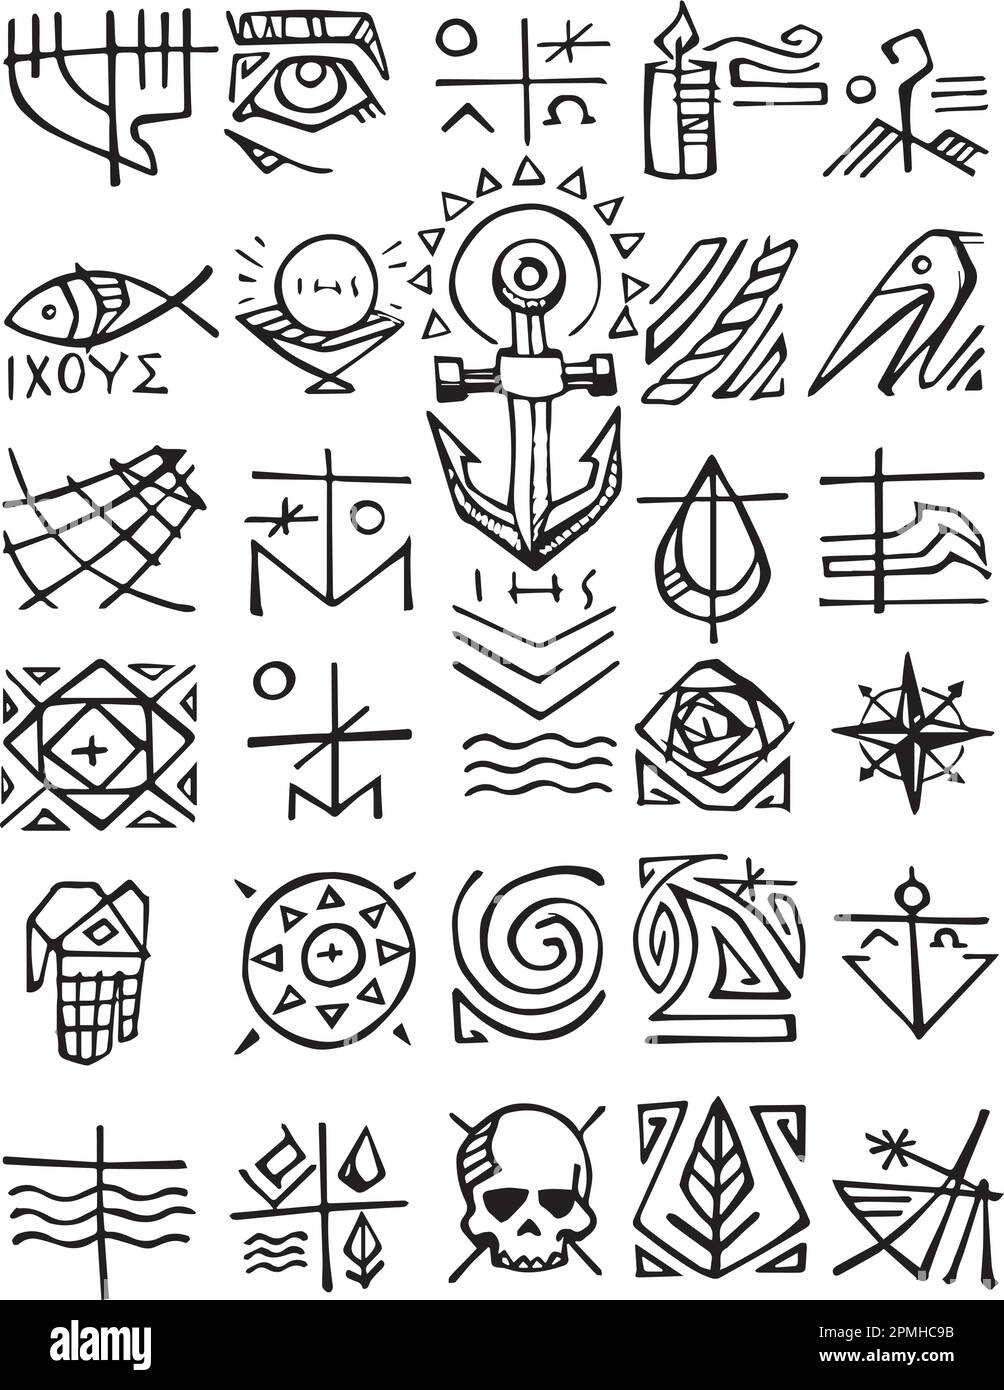 Dibujado a mano ilustración vectorial o dibujo de símbolos cristianos Ilustración del Vector